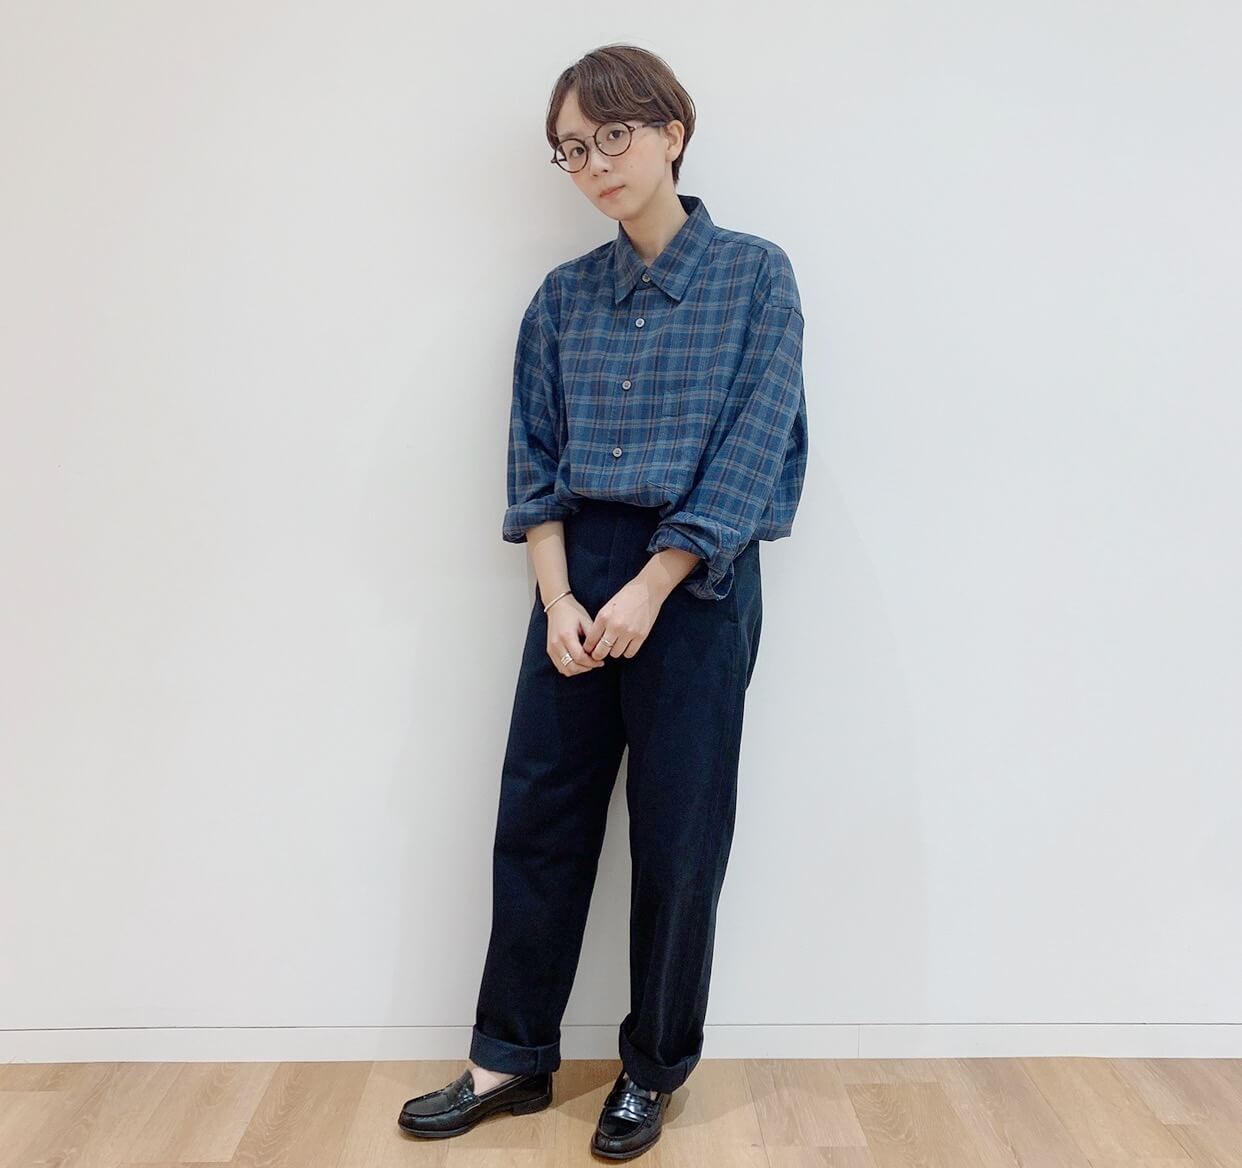 Uniqlo Uで作るメンズライクコーデ Fudgena Specialist Kinokoのボーイズスタイルvol 29 ファッション Fudgena ファッジーナ Fudge Jp